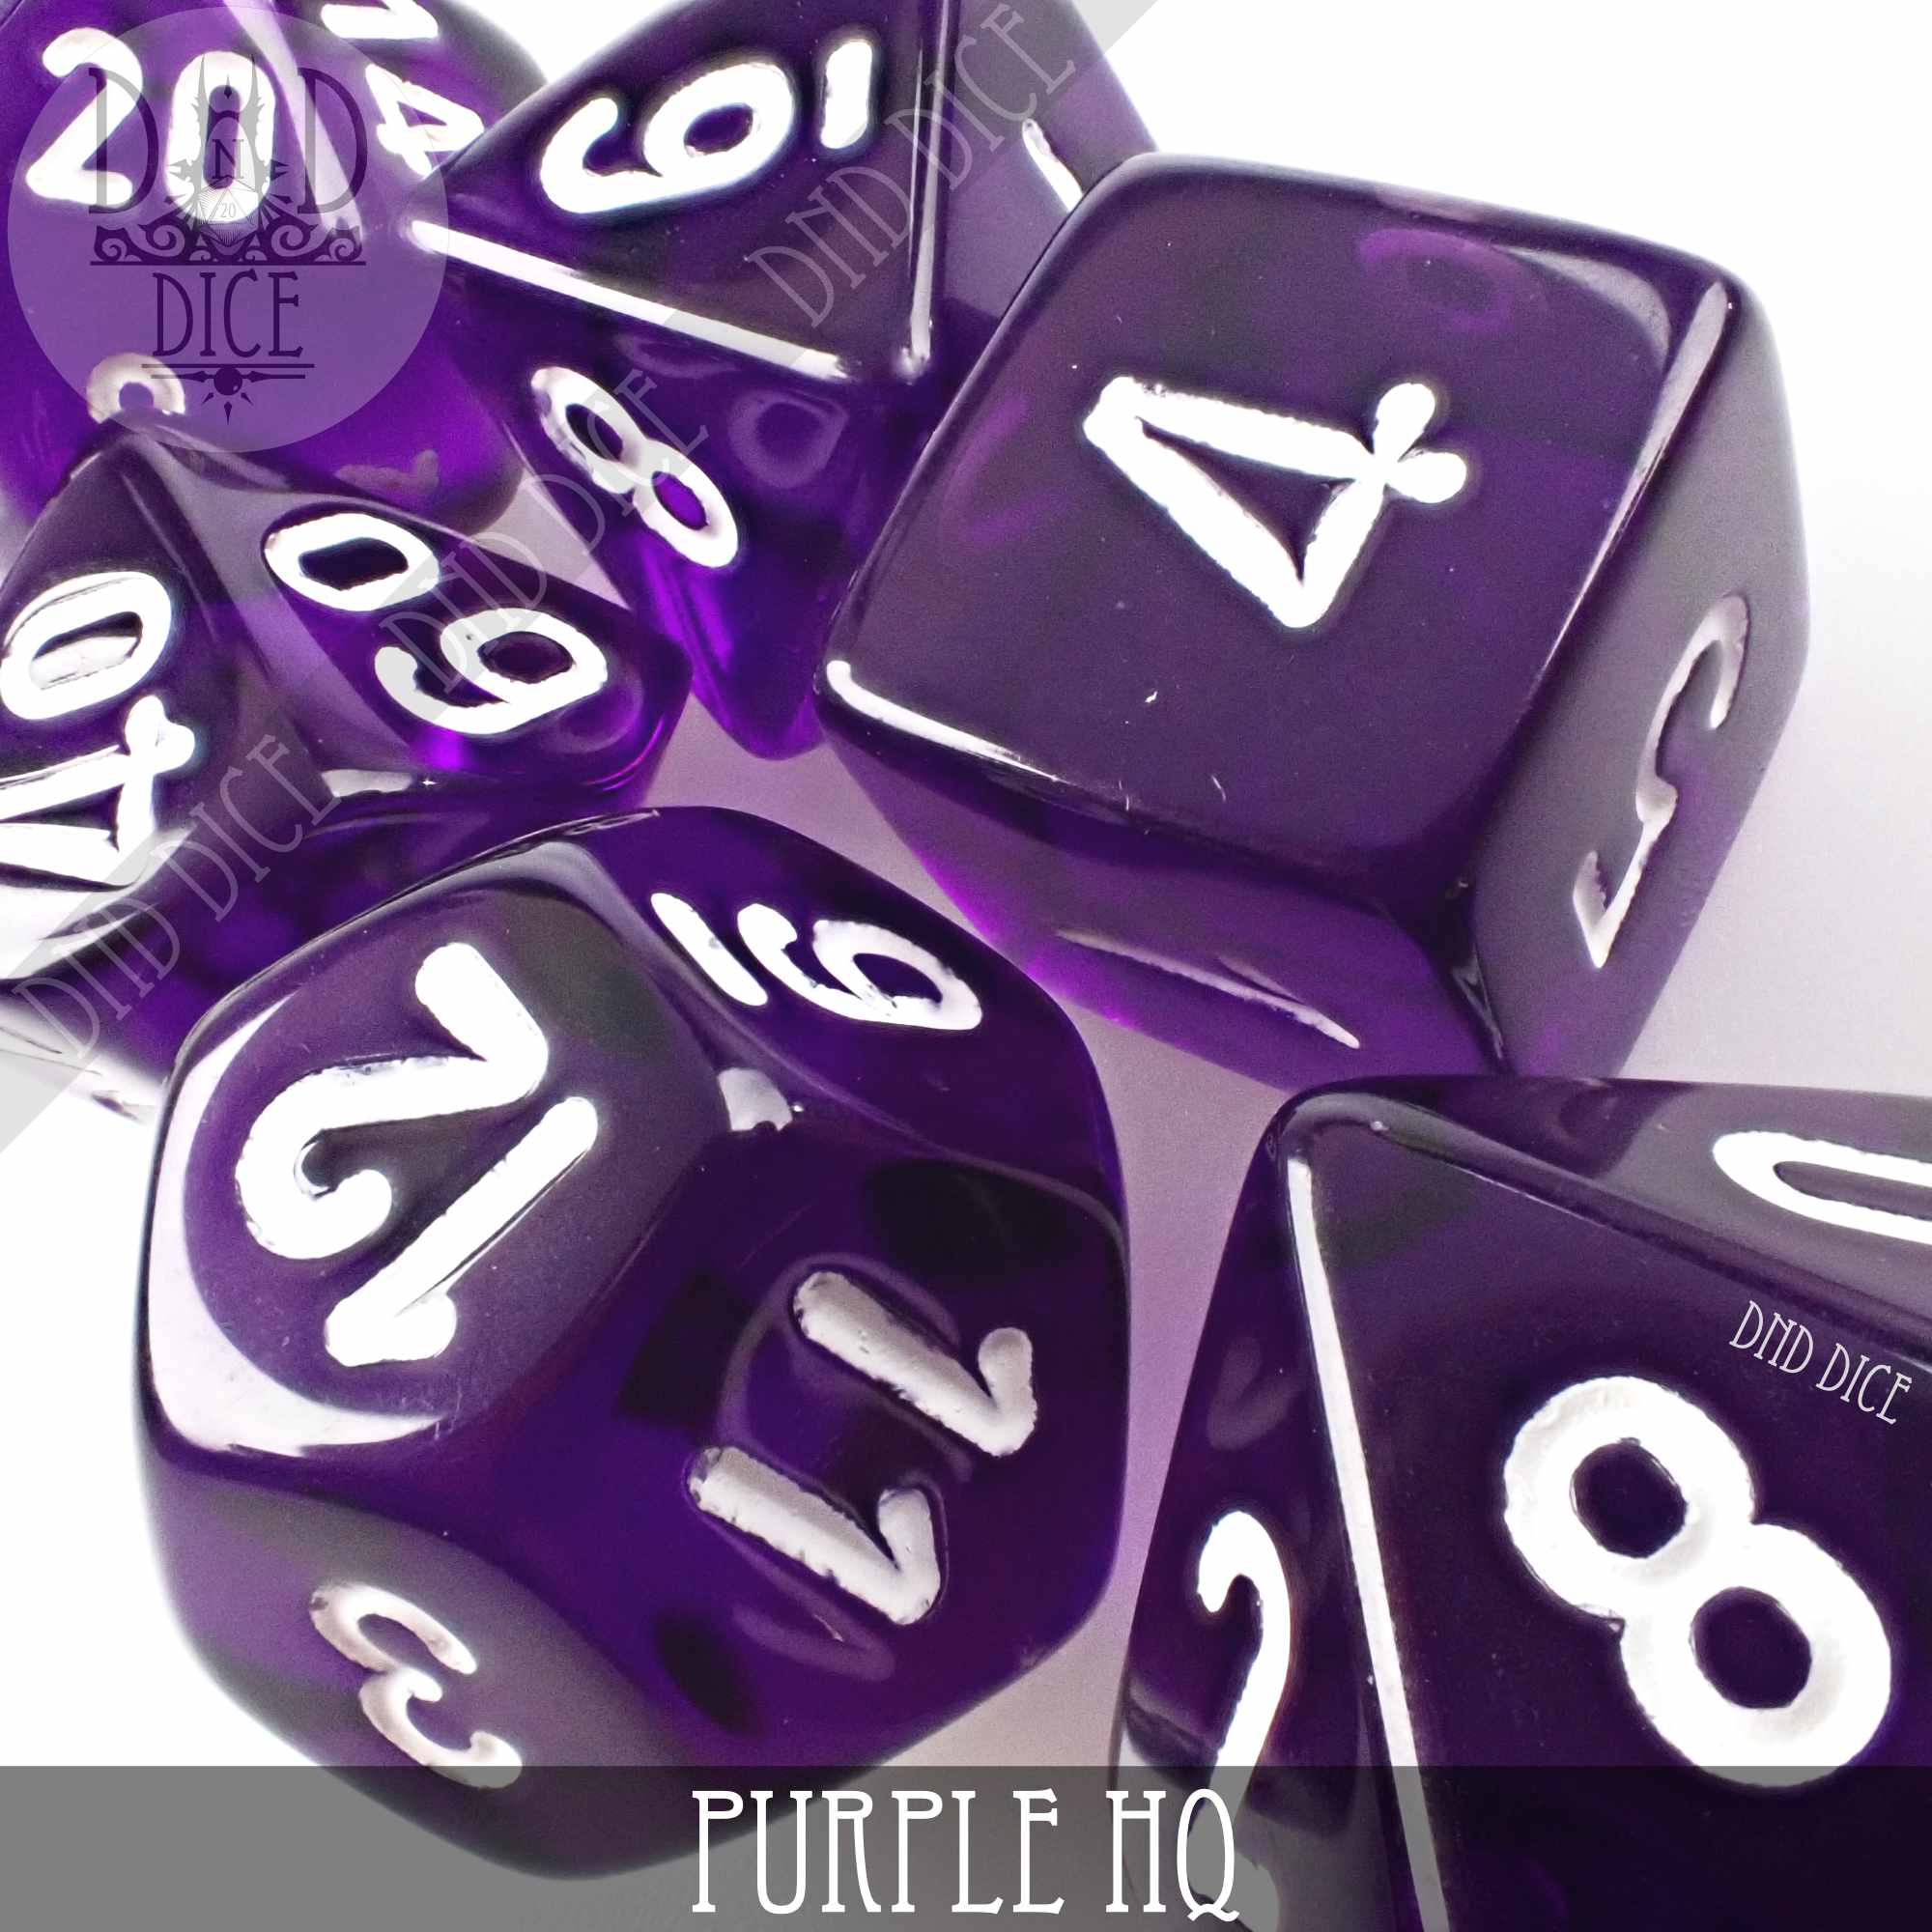 Purple HQ Build Your Own Set